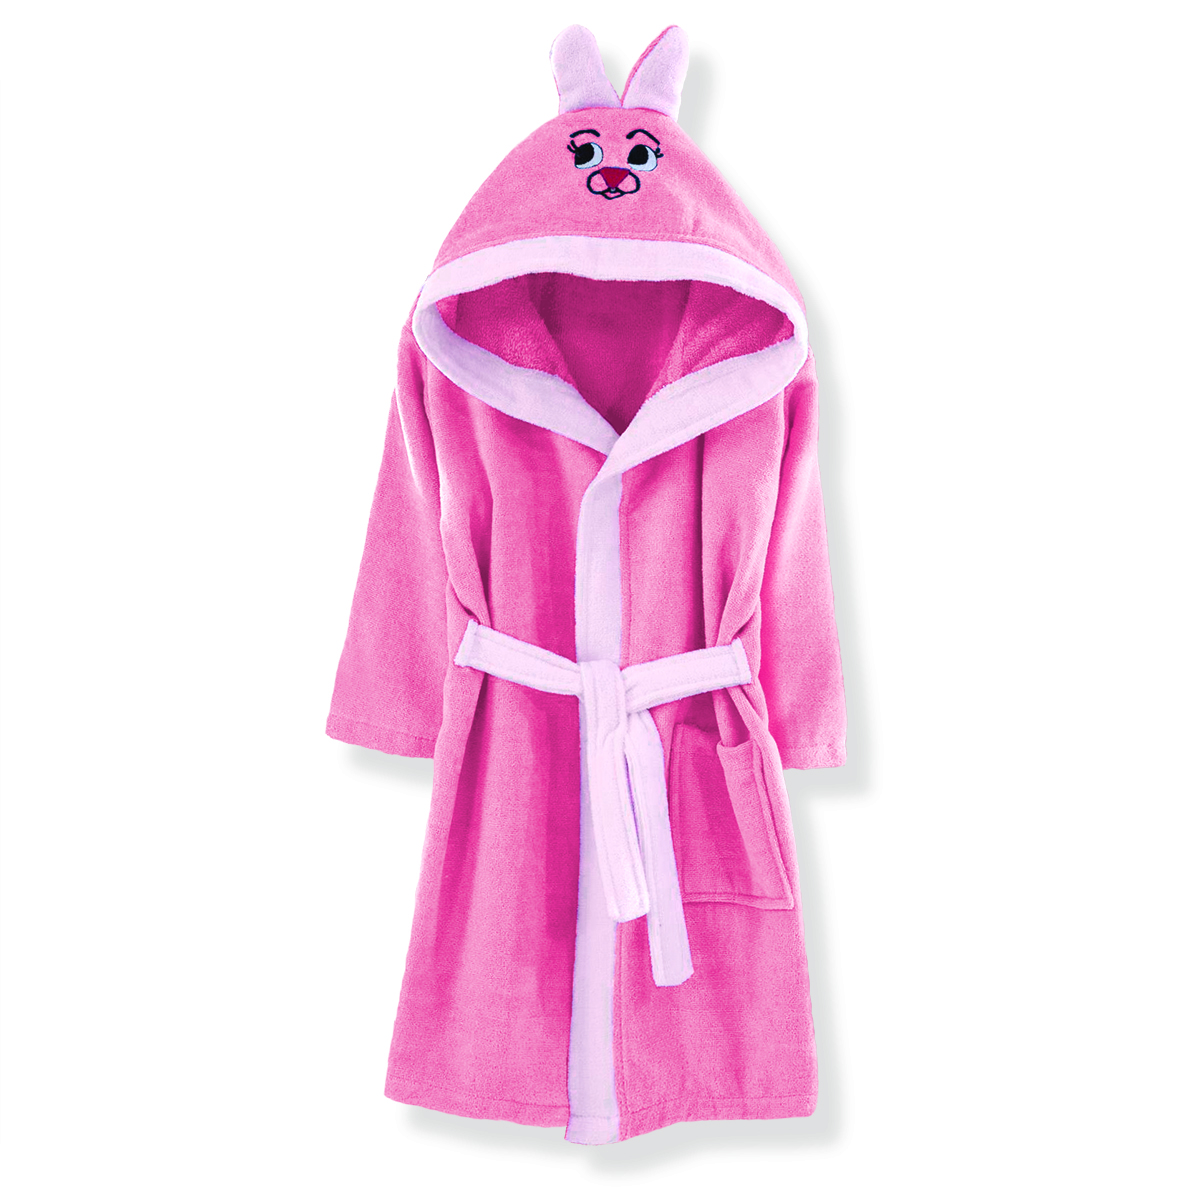 Μπουρνούζι Βαμβακερό Με Κουκούλα Rabbit Pink Νο 10 SBaby (Ύφασμα: Βαμβάκι 100%, Χρώμα: Ροζ) – SBaby – 5206864069510